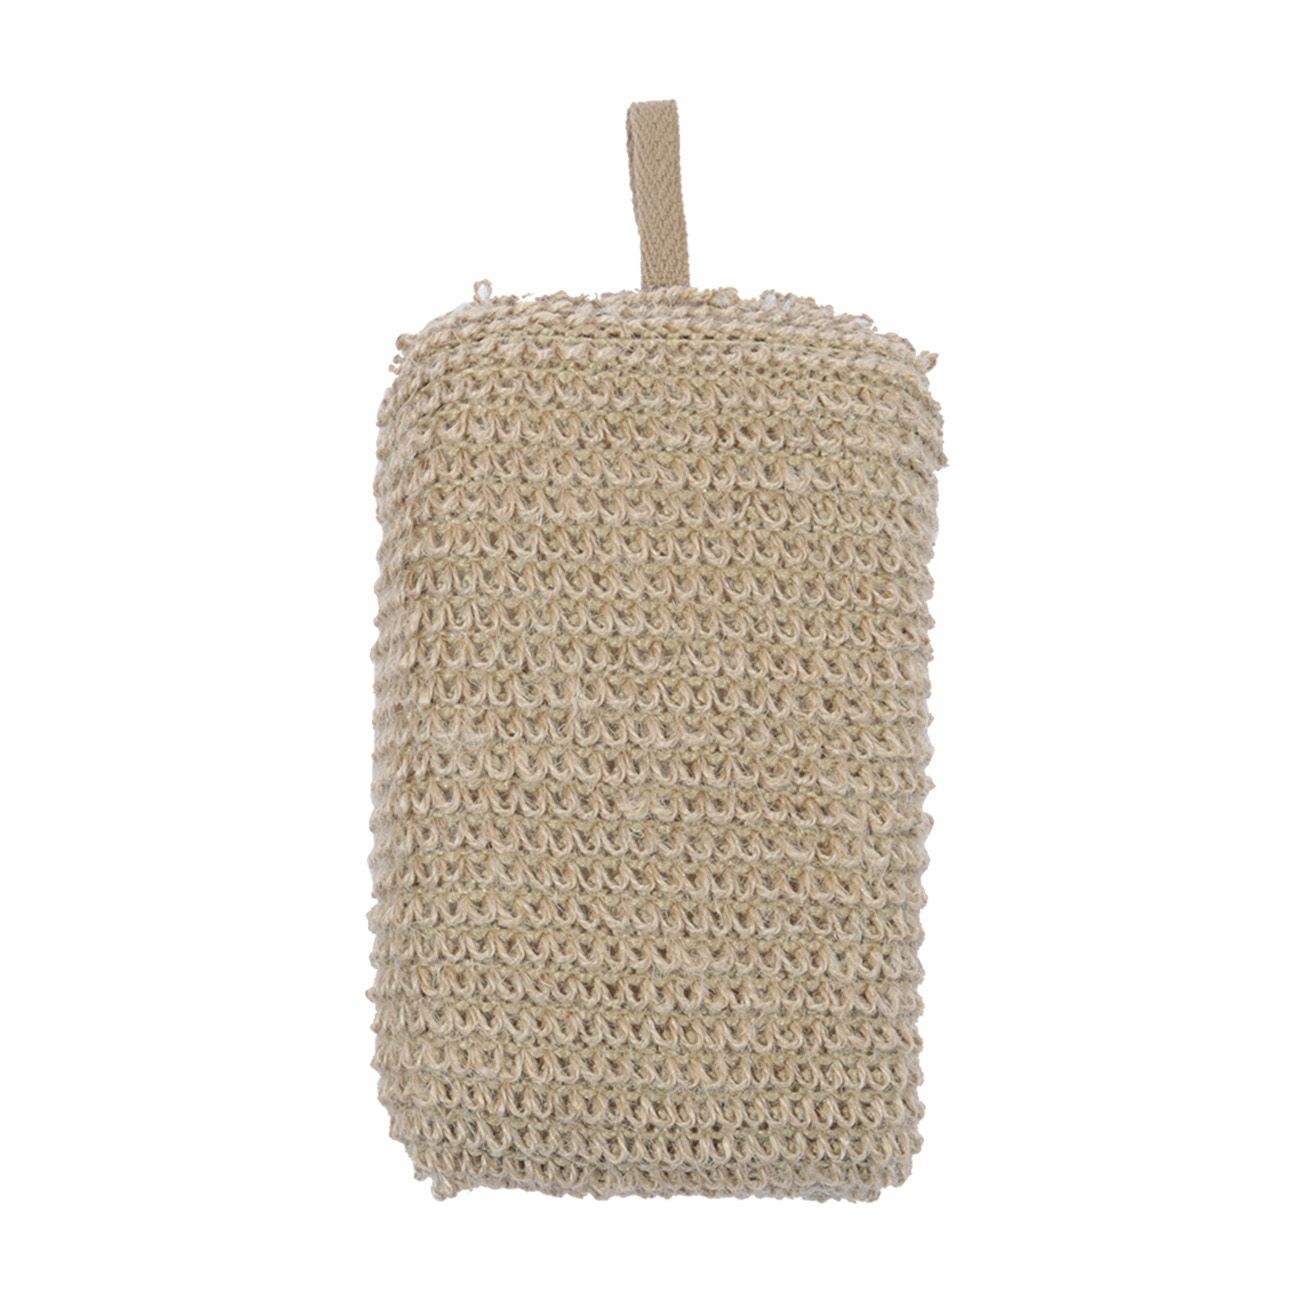 Мочалка-губка для мытья тела Eco life 9х14 см конопляное волокно/полиуритан бежевая